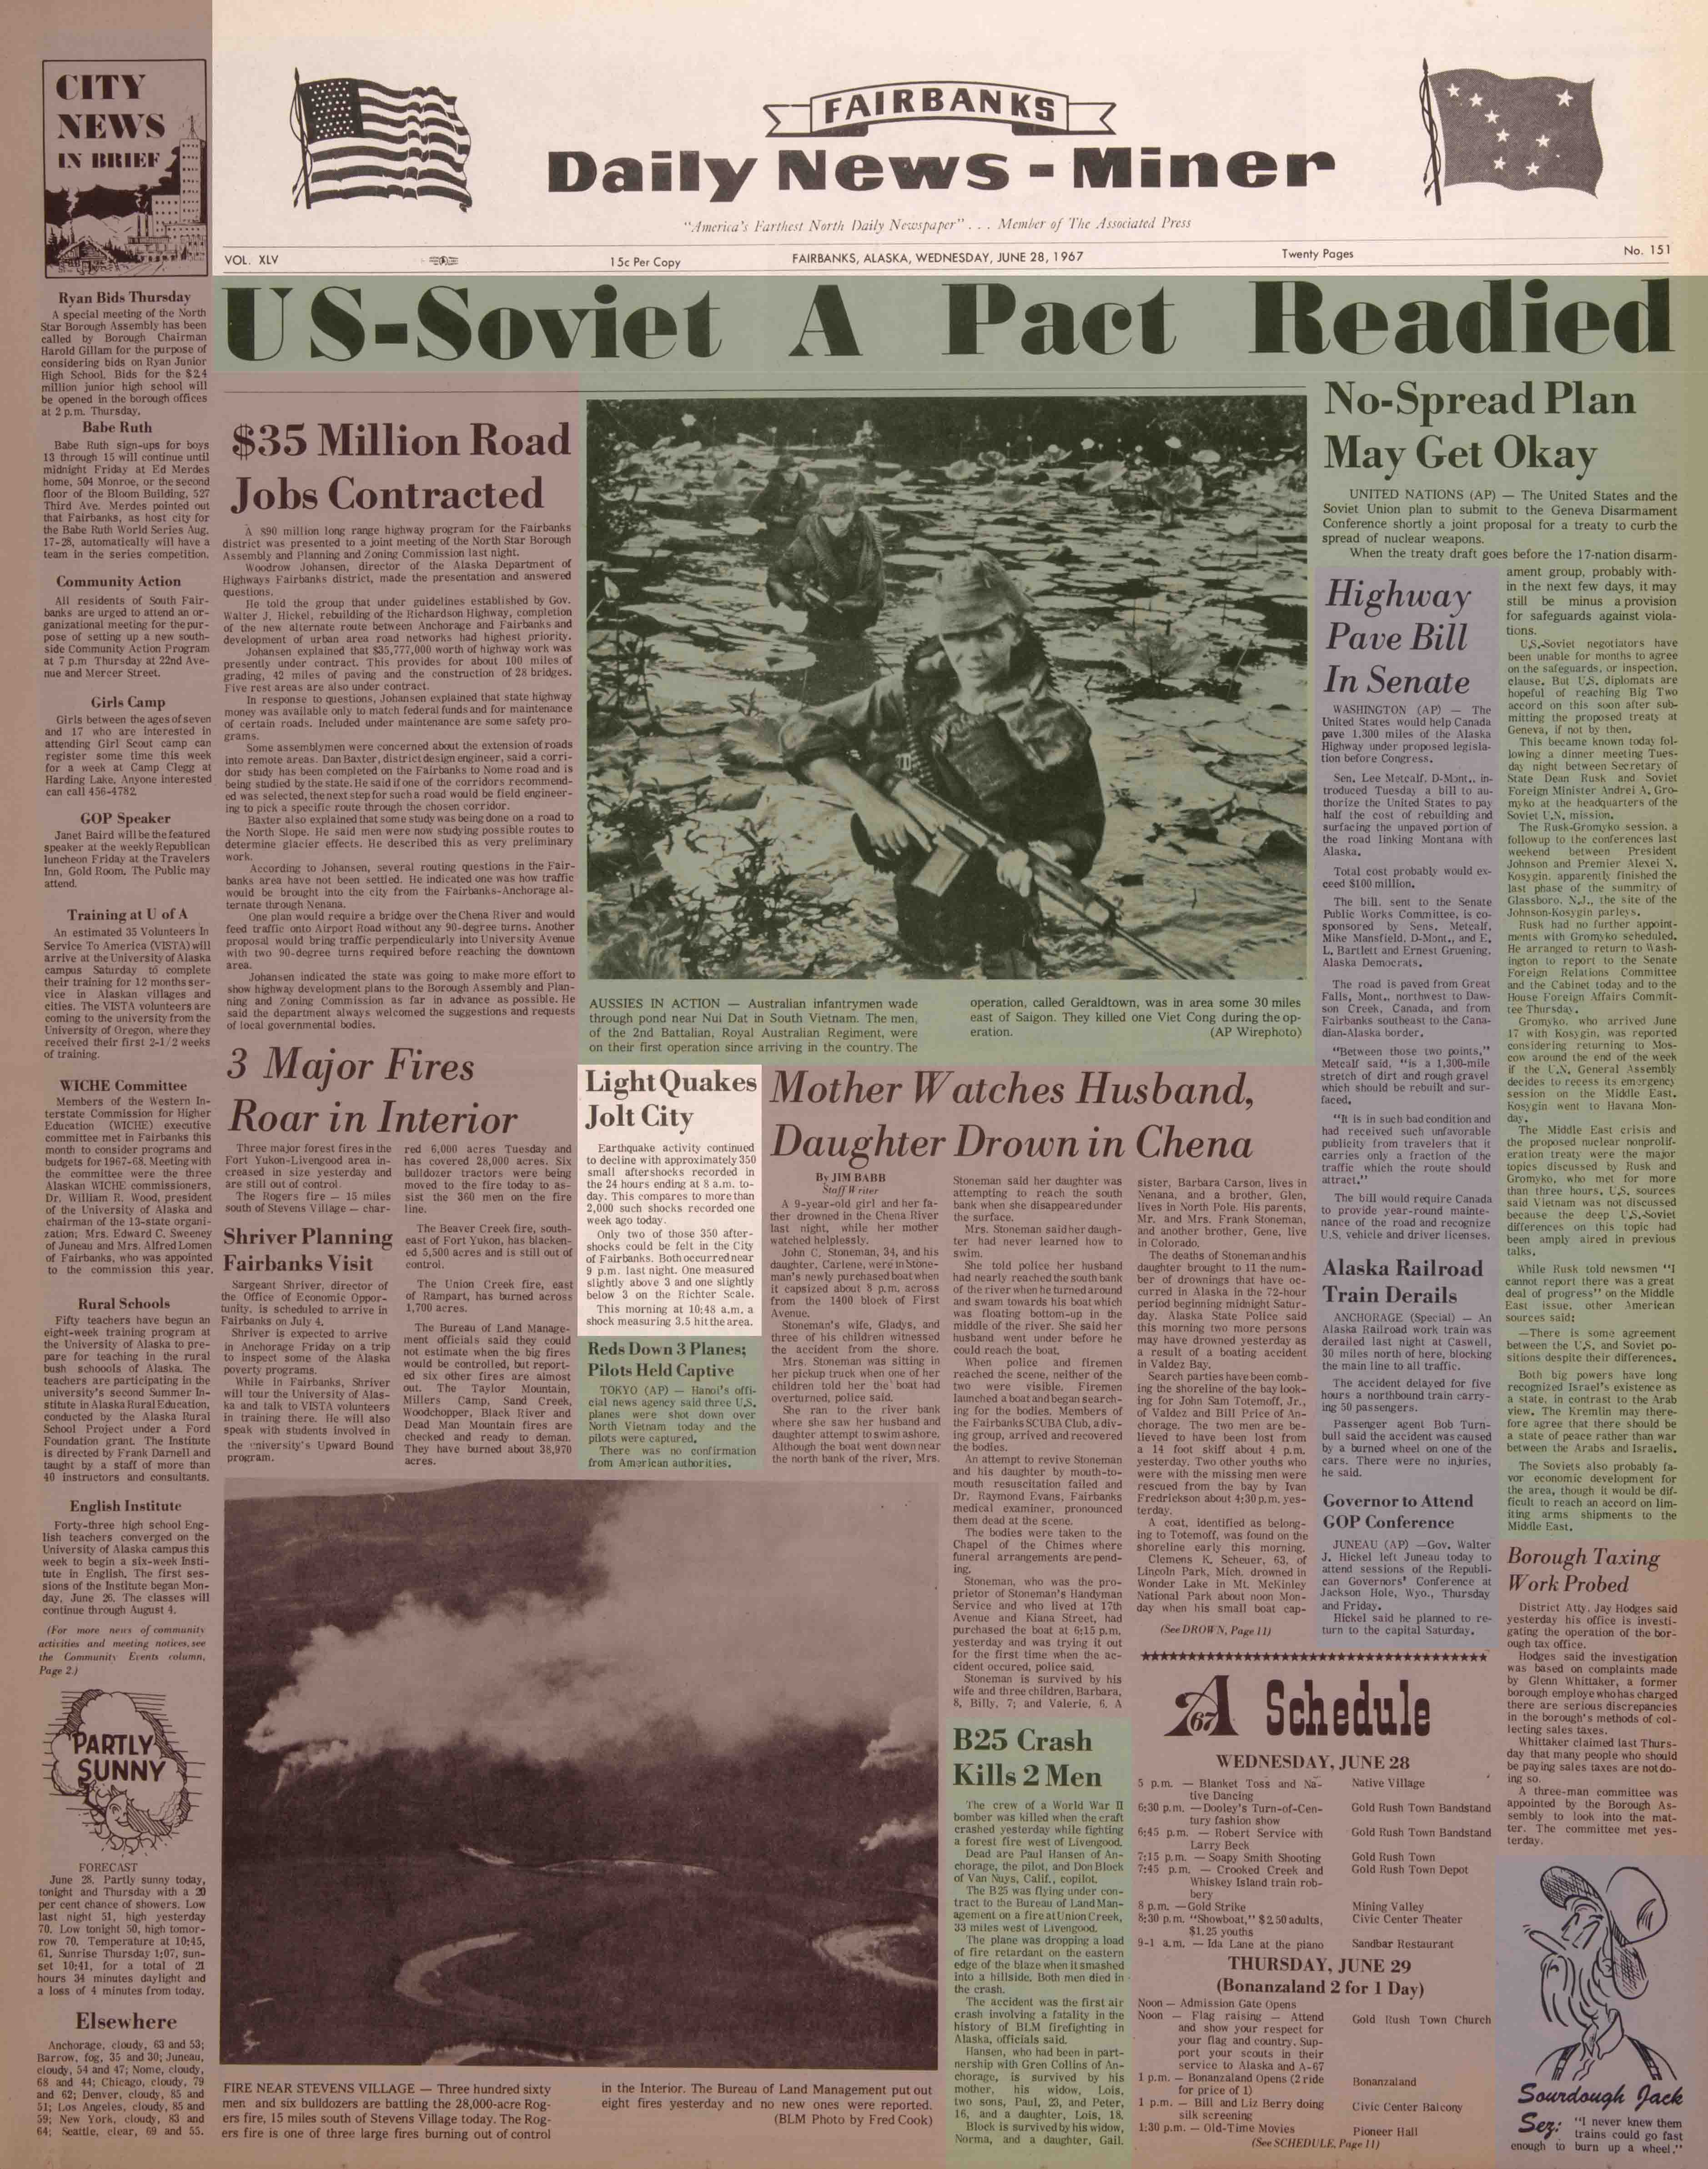 1967 June 28, Fairbanks Daily News-Miner (pg 1)